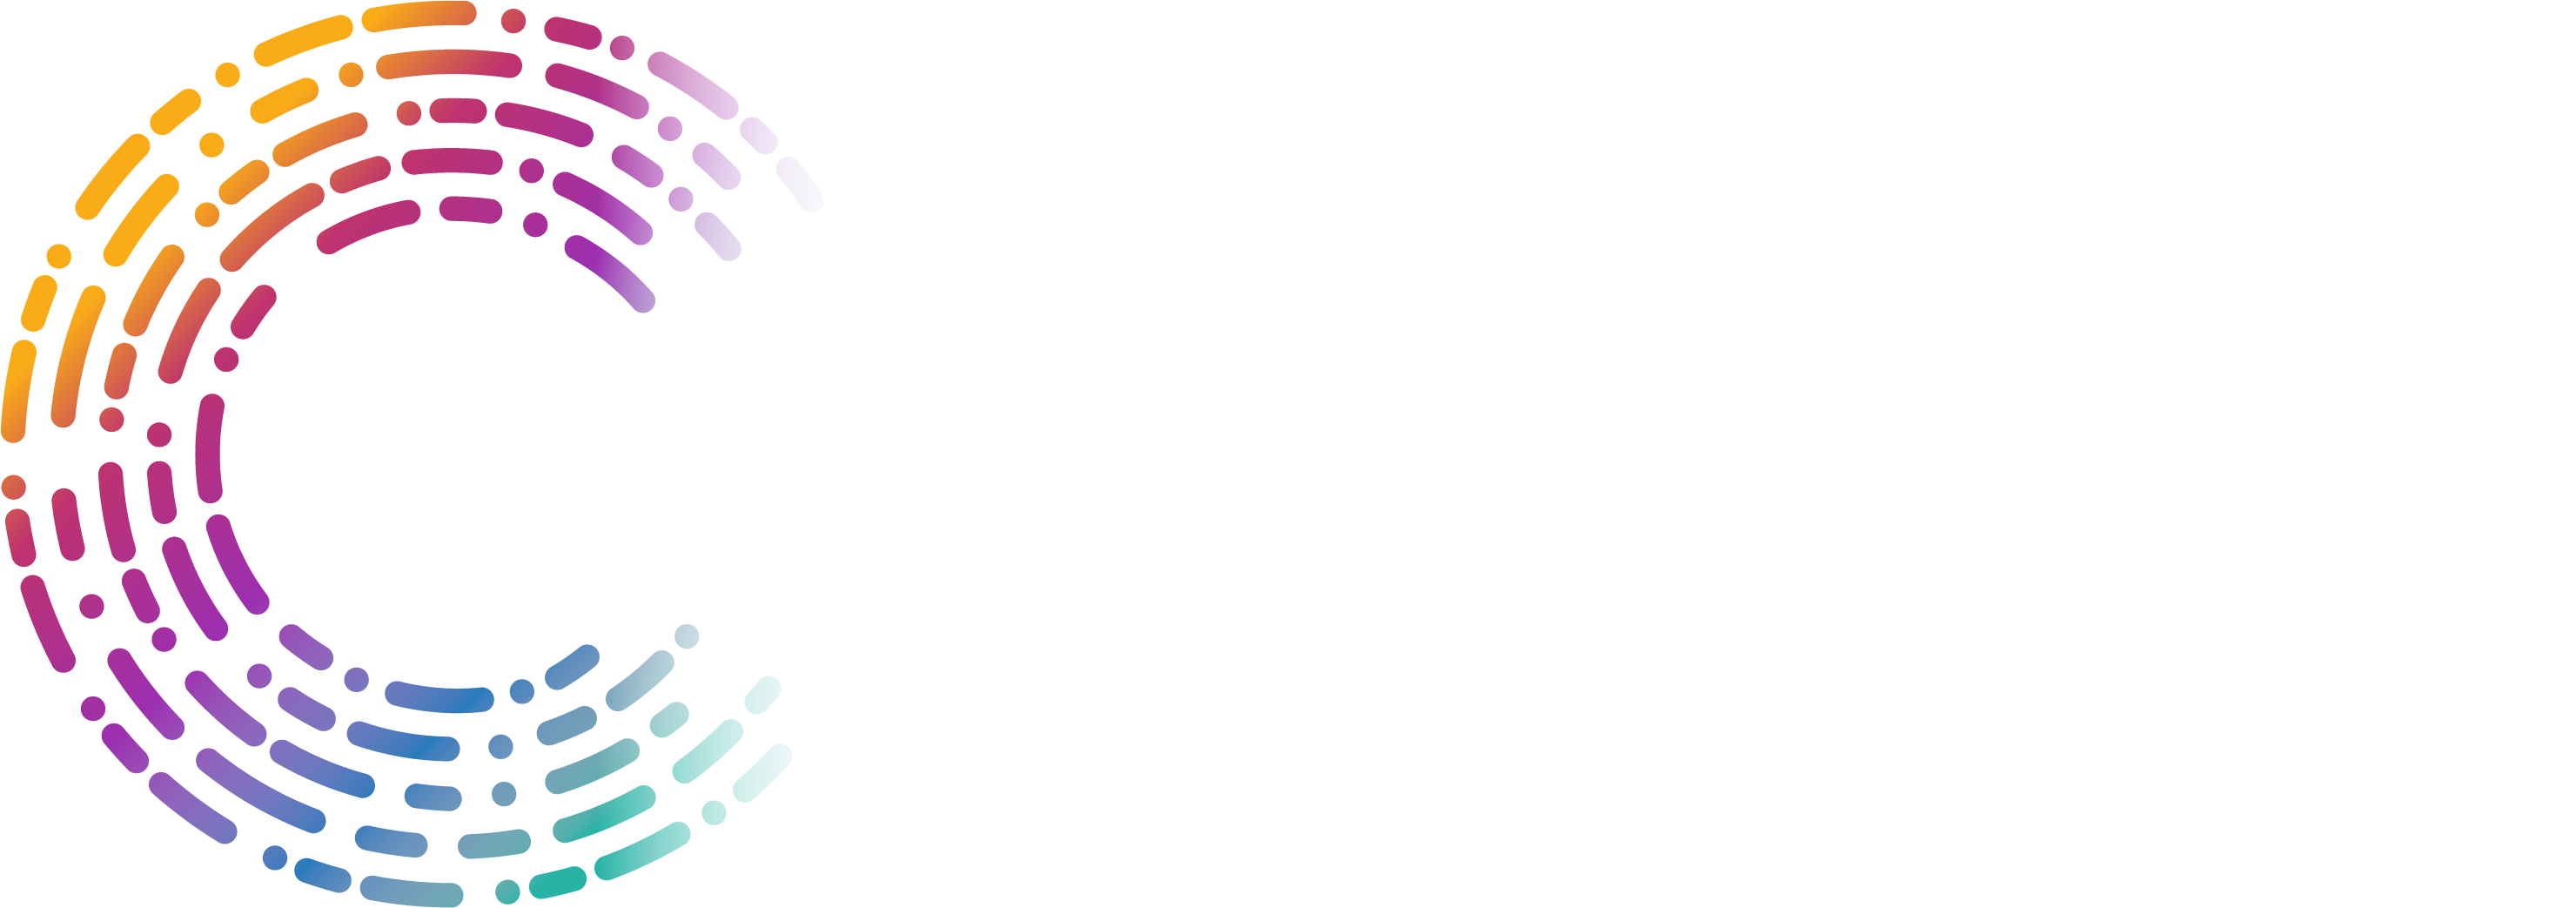 Ceberus